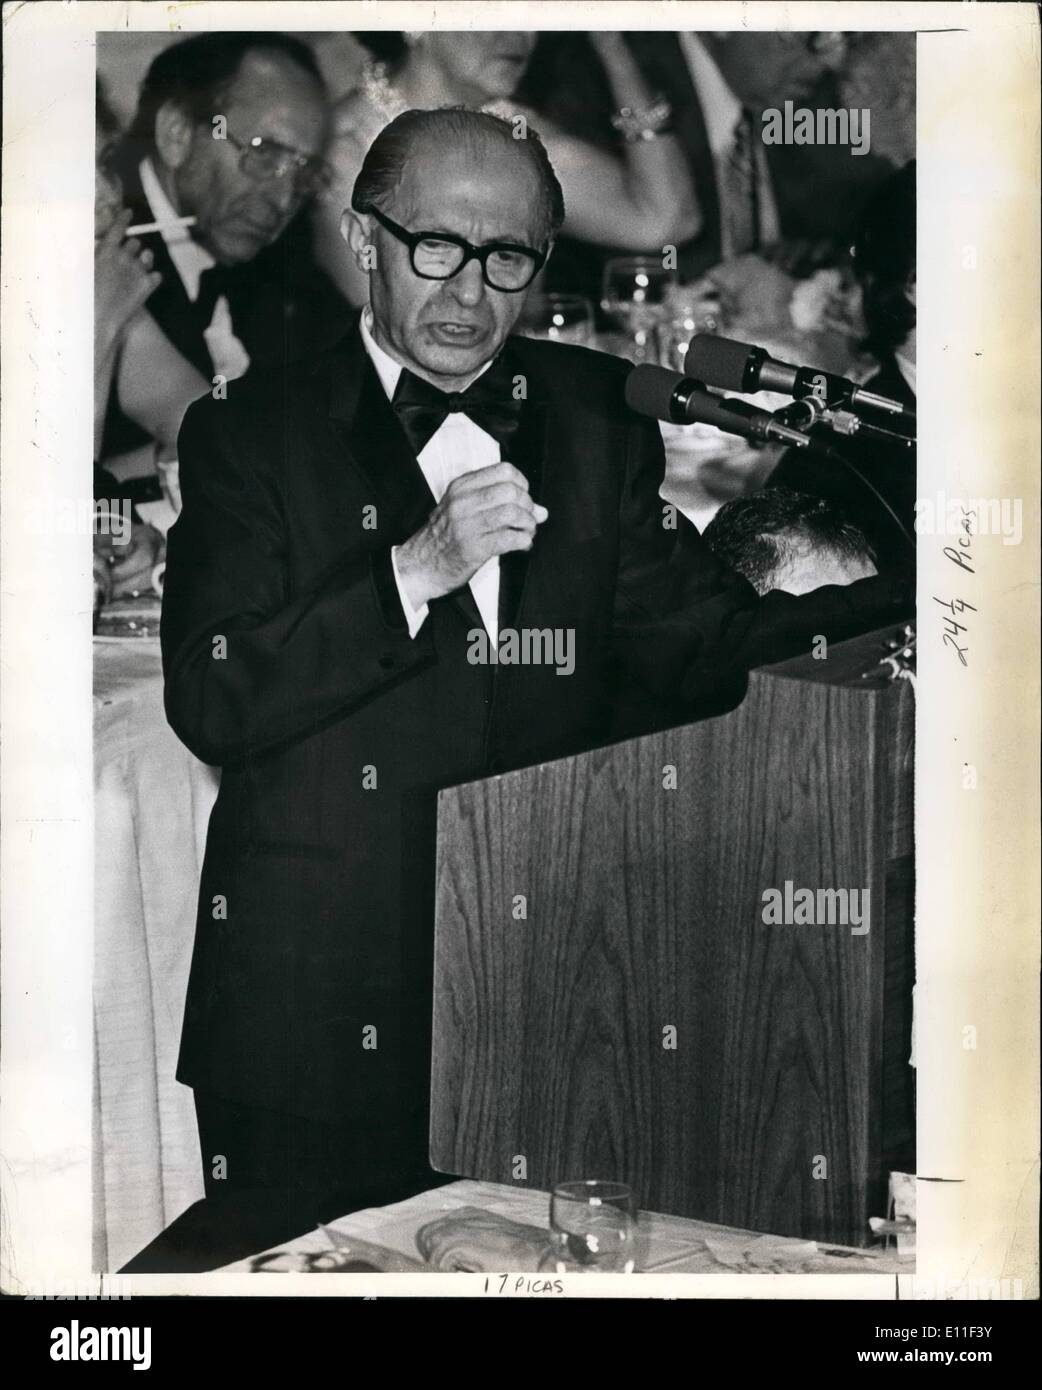 Lug. 07, 1977 - Premier israeliano Menahem begin parla nello Stato di Israele vincoli nazionali di cena di benvenuto Waldorf Astoria. Foto Stock